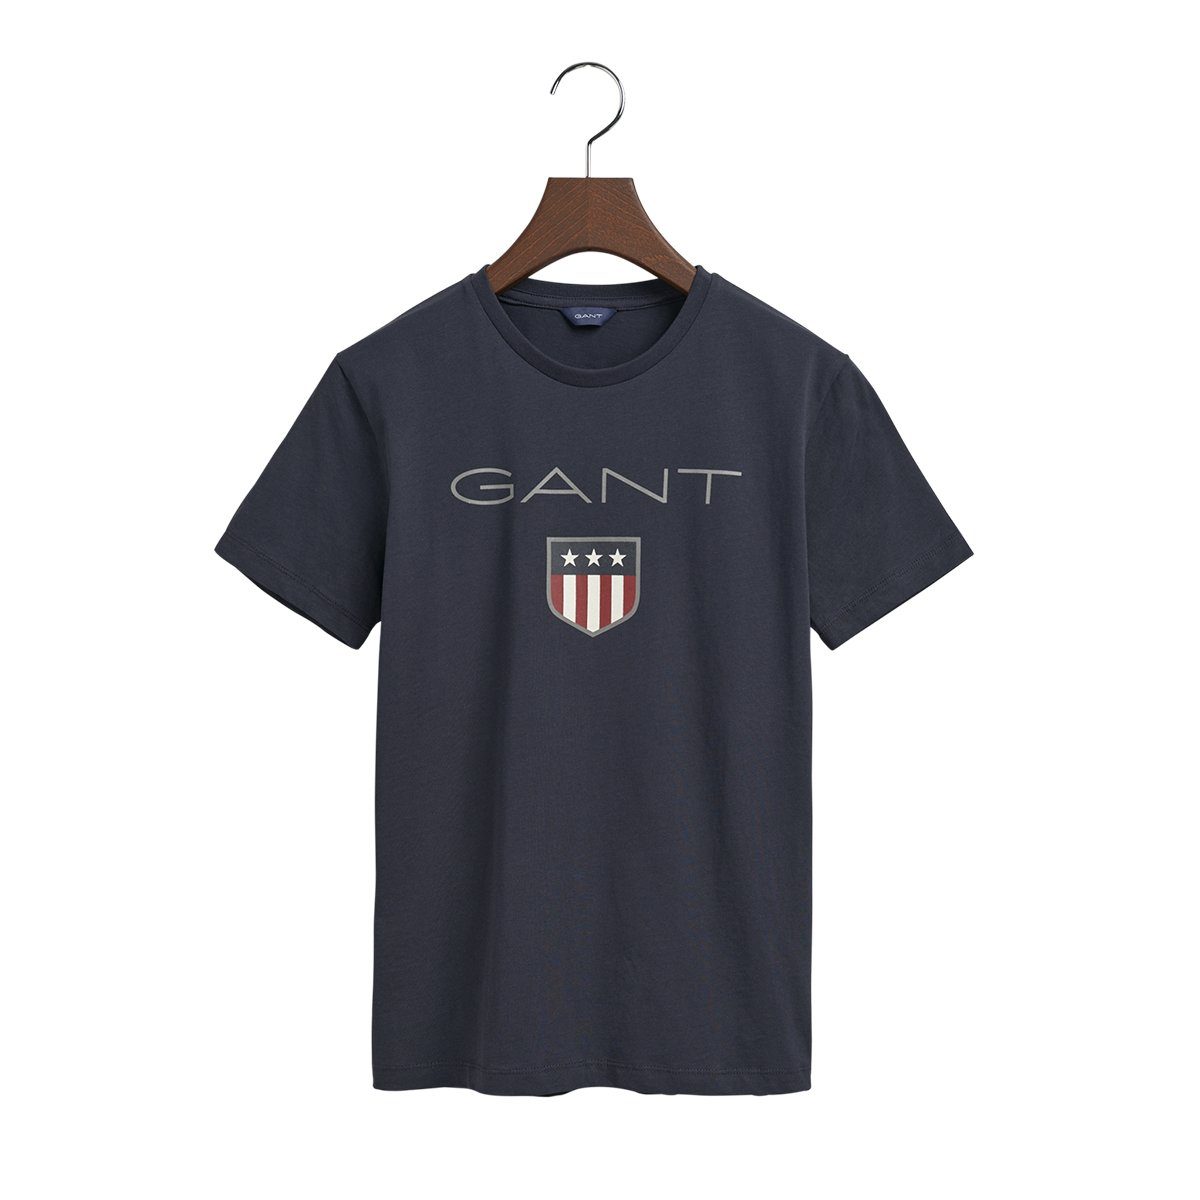 SS T-Shirt 905114 T-Shirt Gant SHIELD Shirt Kinder Unisex Dunkelblau